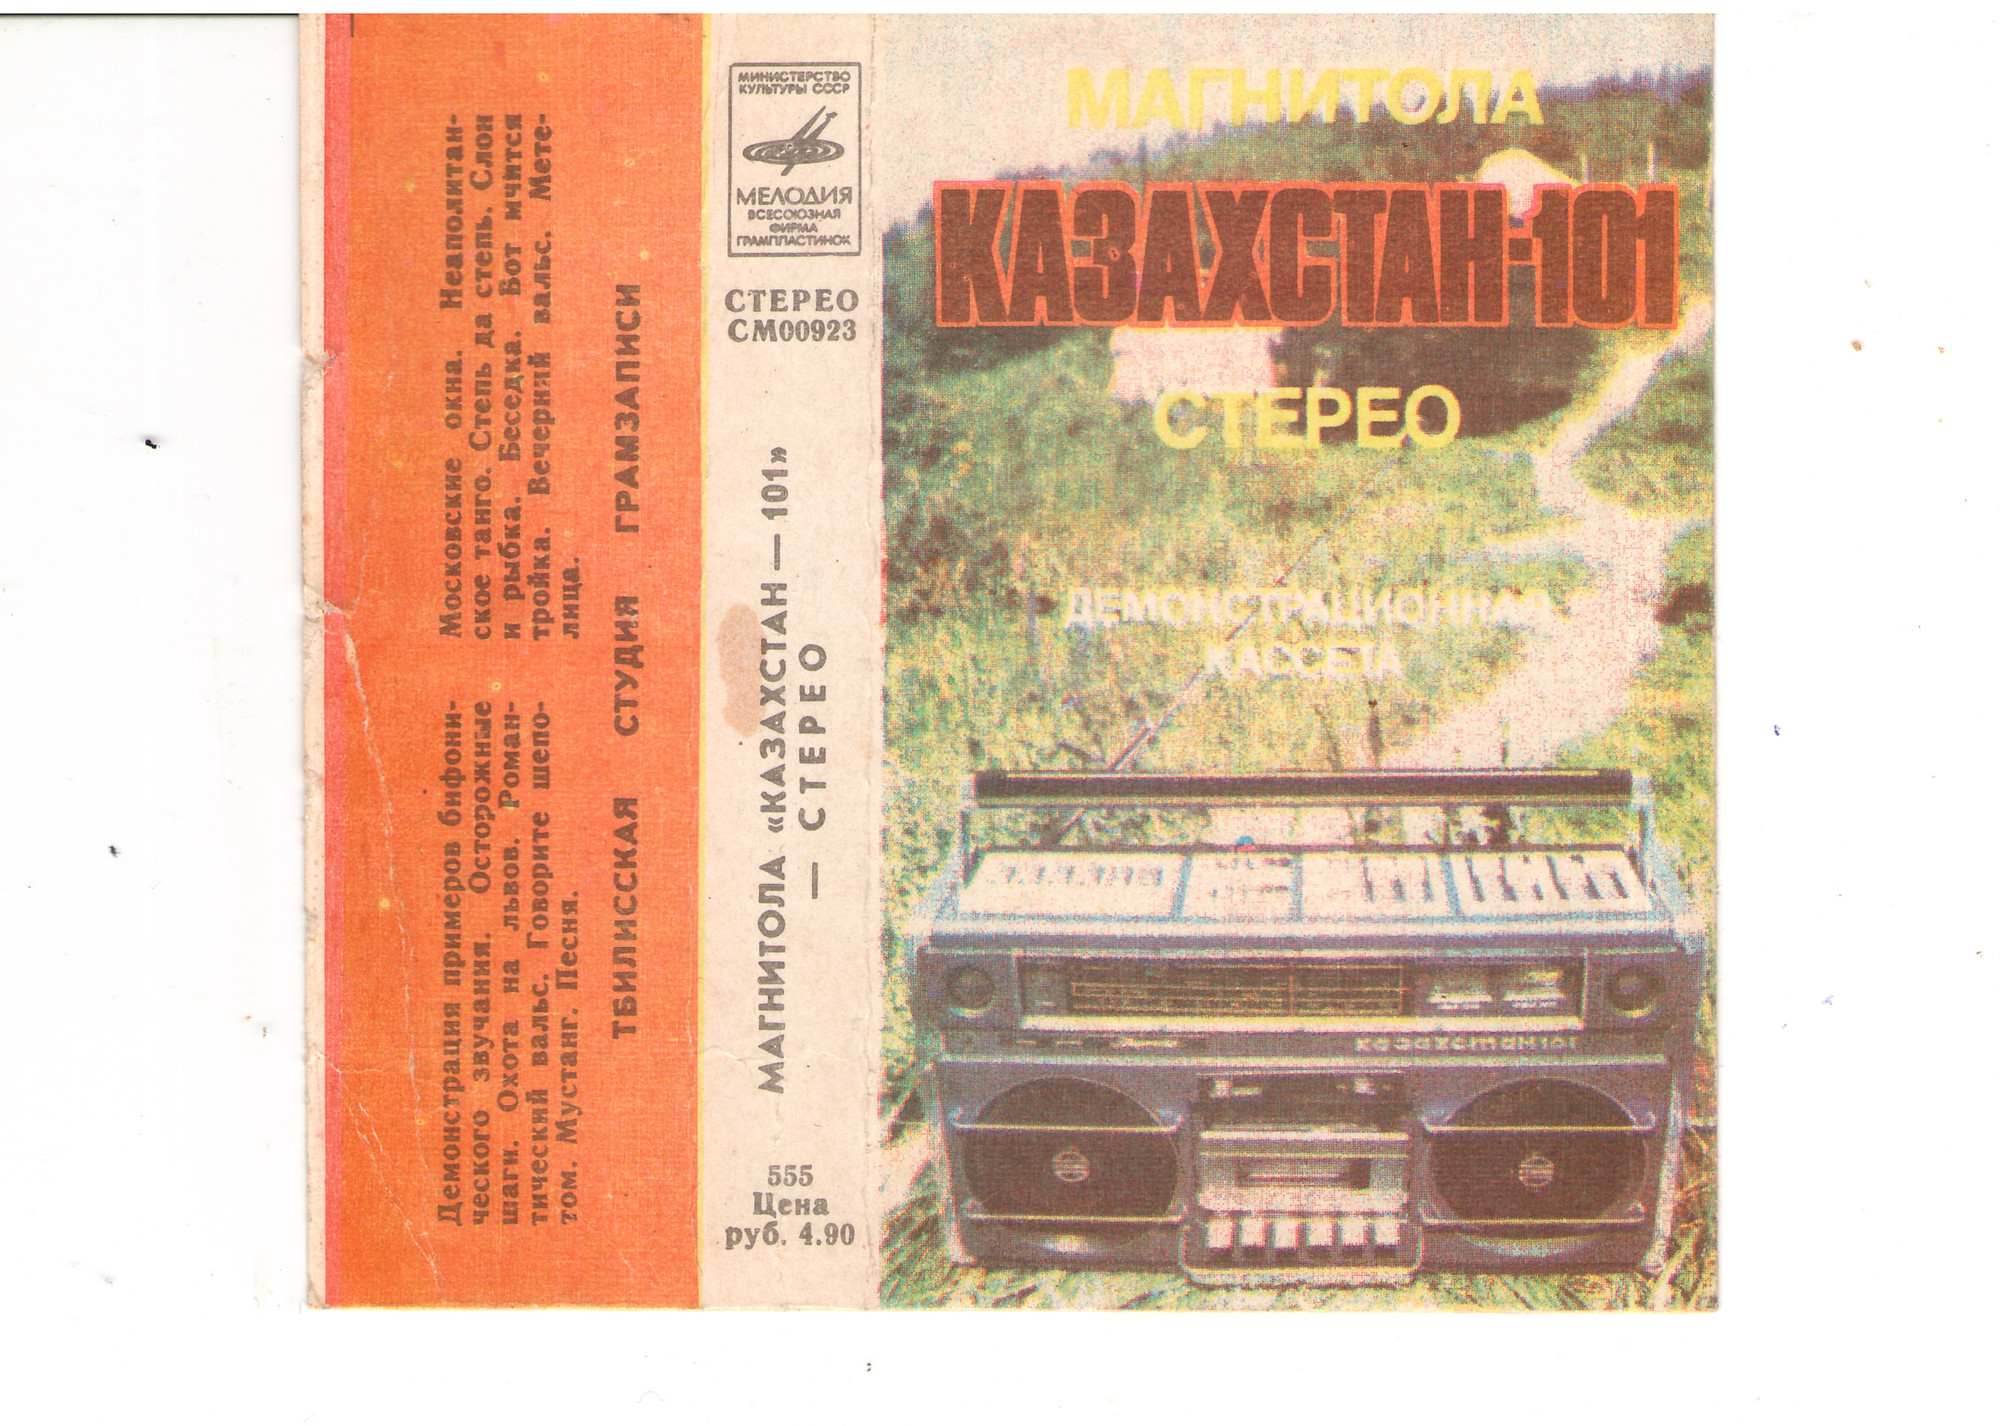 Магнитола КАЗАХСТАН-101 стерео. Демонстрационная кассета